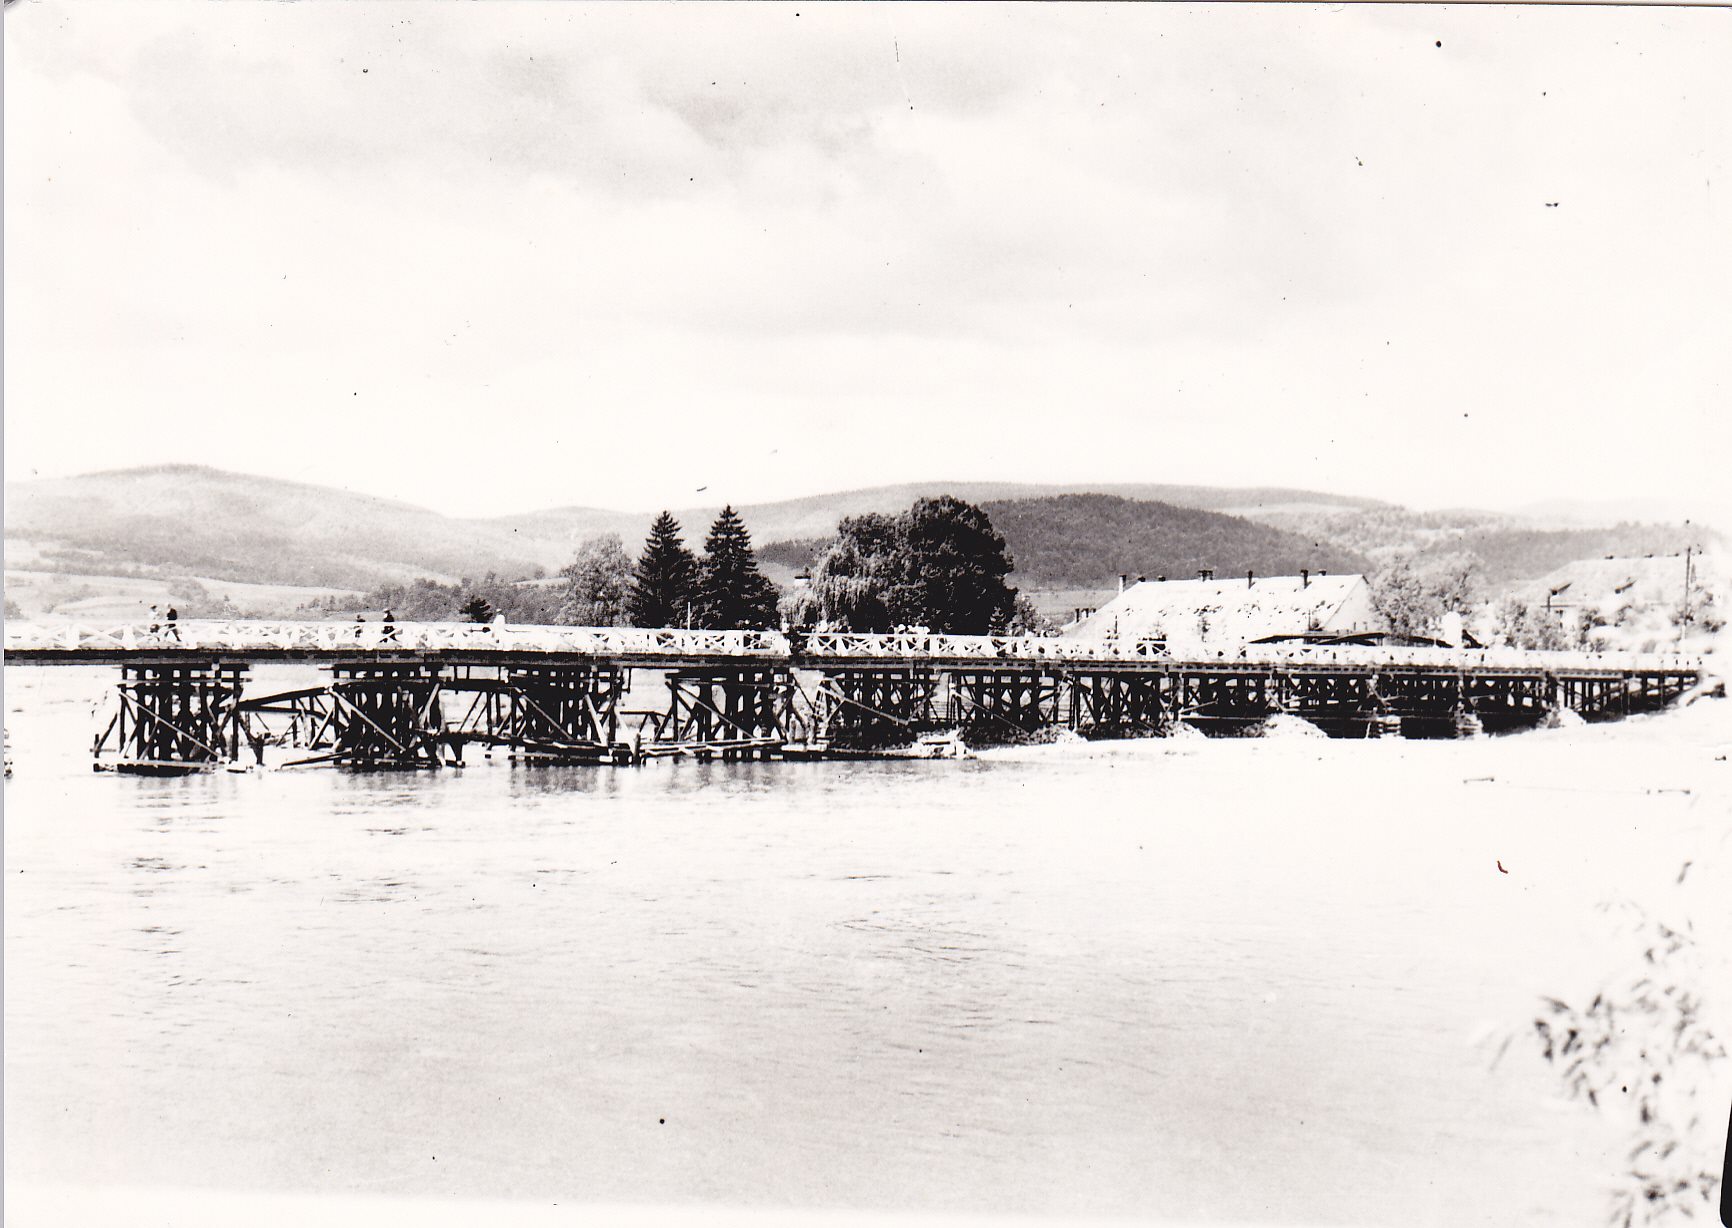 Provizórny drevený most postavený v máji 1945 v spolupráci ČA s obyvateľmi Púchova. ONV po jeho prevzatí žiadal čím-skôr vybudovať nový železný most, keďže by mohlo dôjsť k jeho zničeniu veľkou vodou. Obavy sa naplnili a vo februári 1946 sa Váh vylial z koryta, strhol most a zasiahol celé mesto.